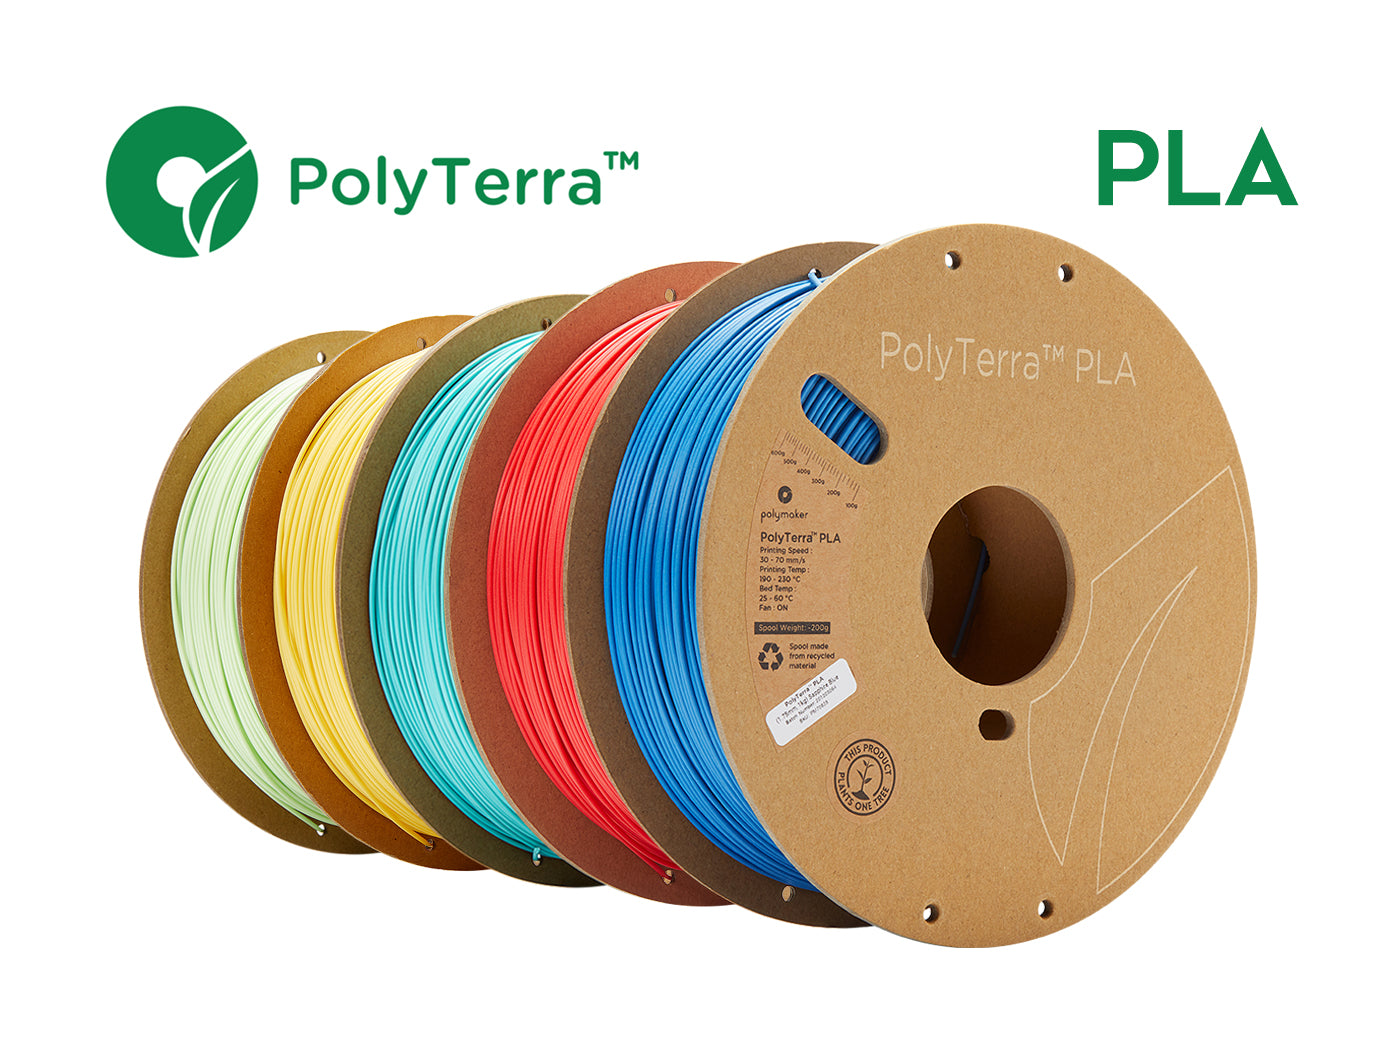 Polymaker Matte PLA Filament 1.75mm Teal, 1.75 PLA 3D Printer Filament 1kg  - PolyTerra 1.75 PLA Filament Matte Teal 3D Printing Filament